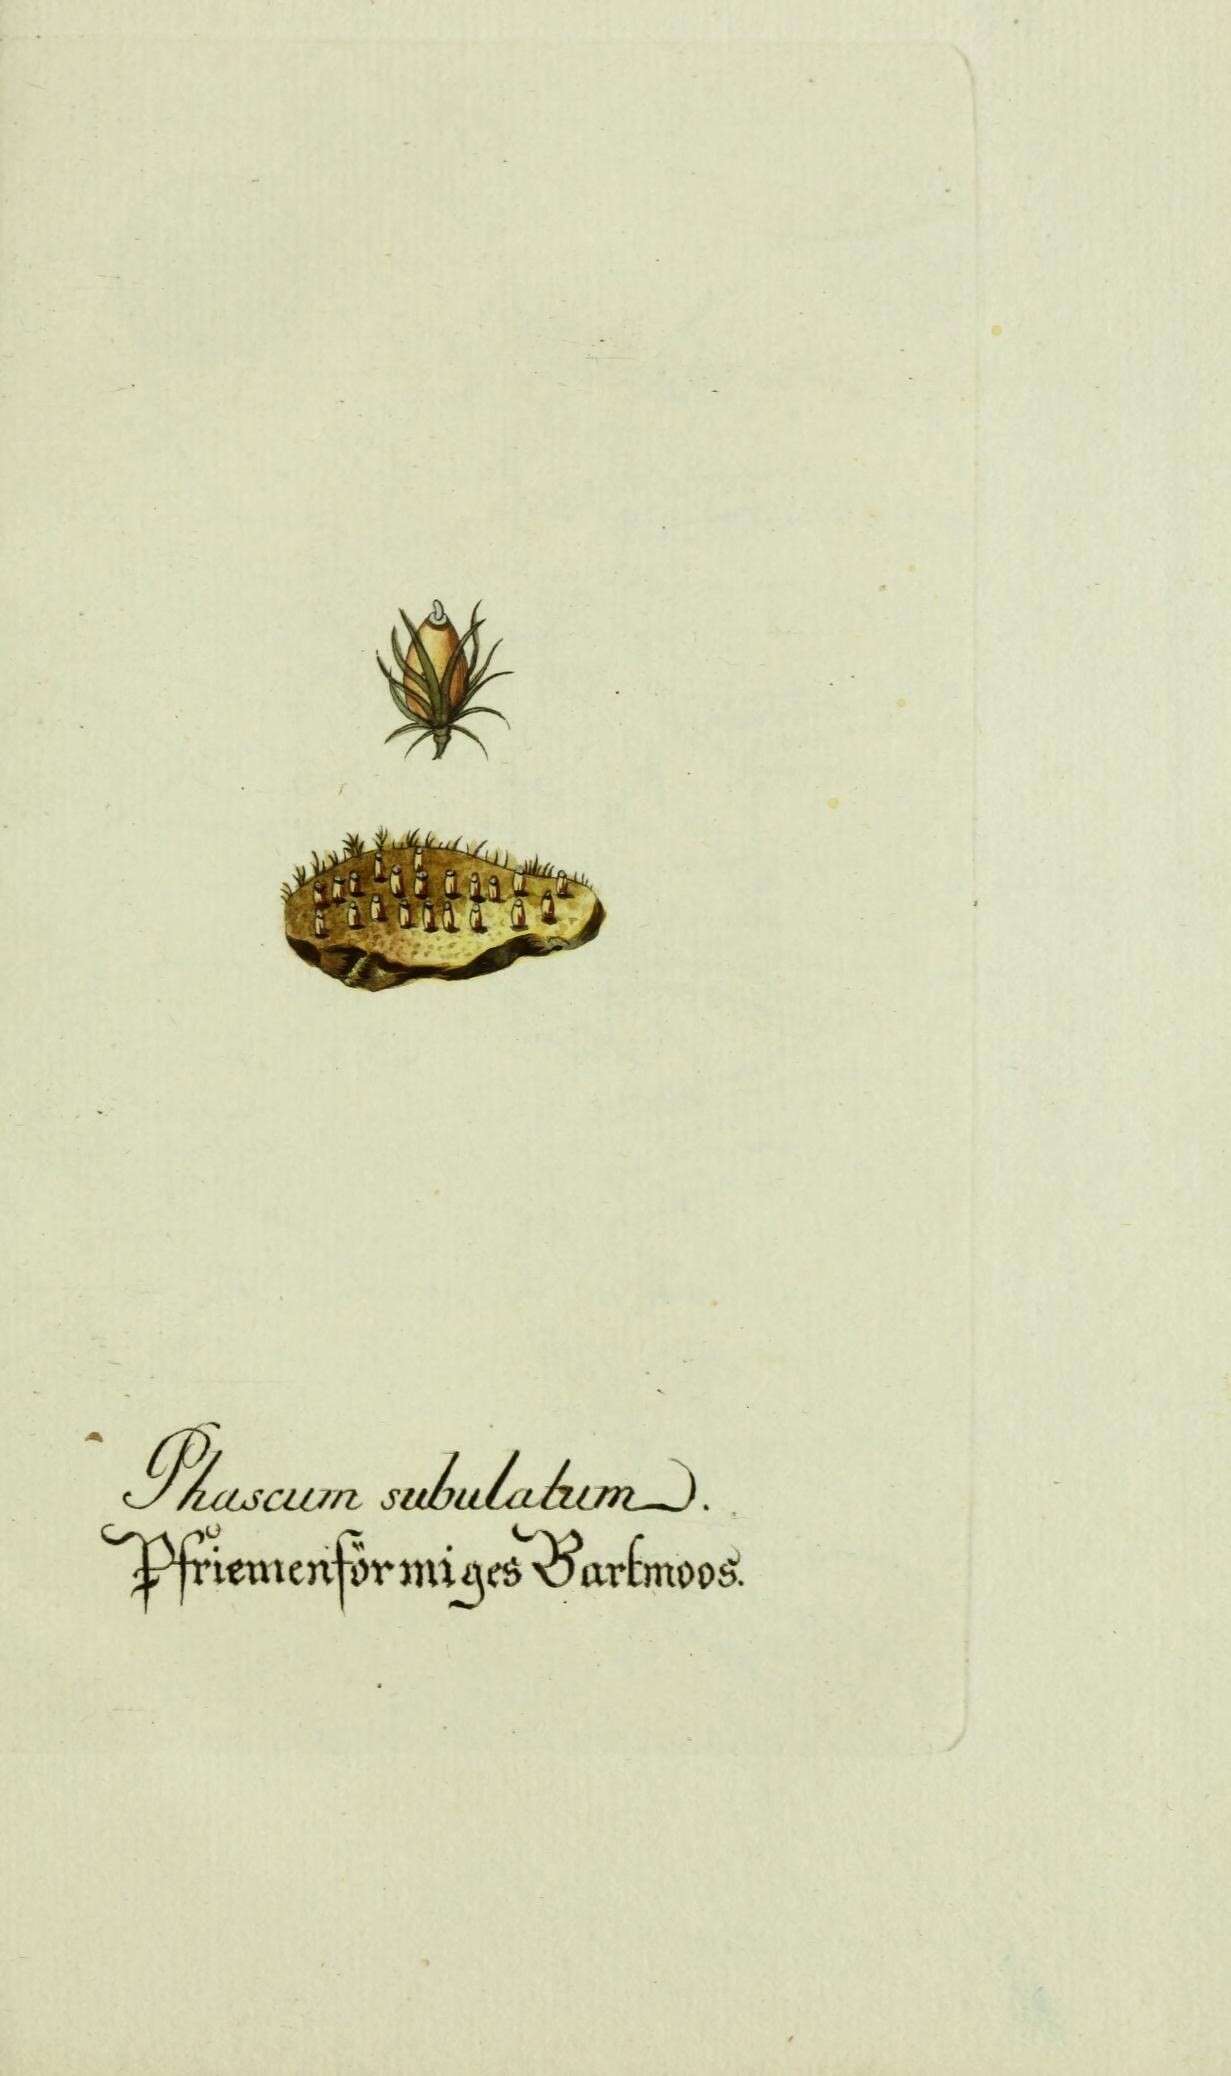 Image de Pleuridium subulatum Rabenhorst 1848